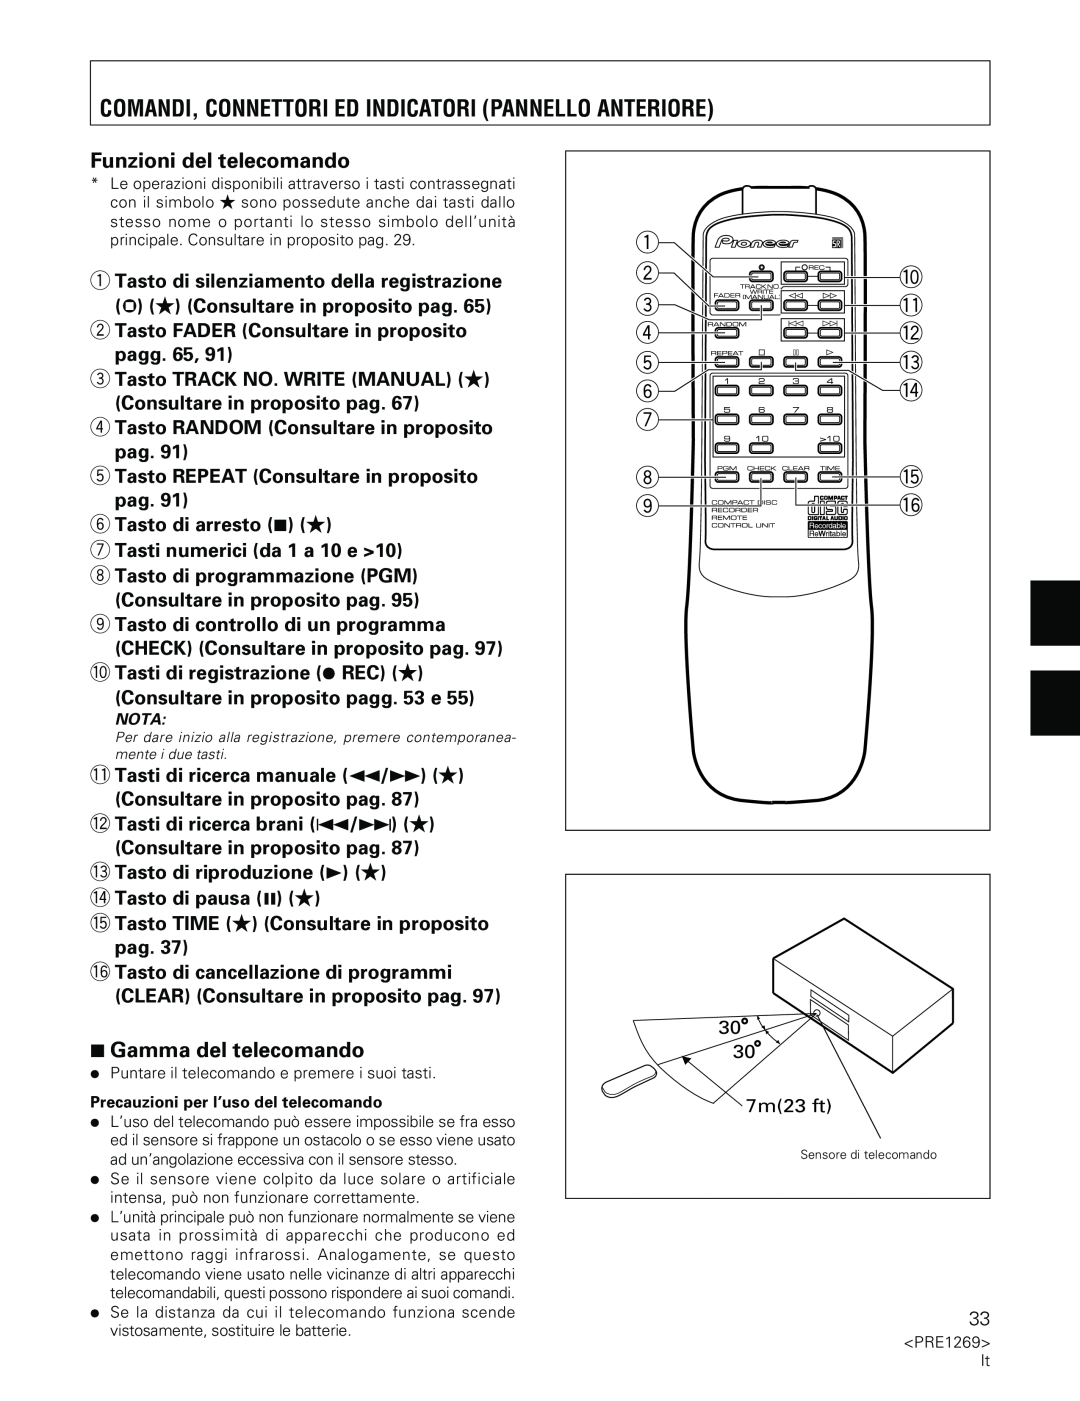 Pioneer PDR-555RW operating instructions Funzioni del telecomando, 7Gamma del telecomando 